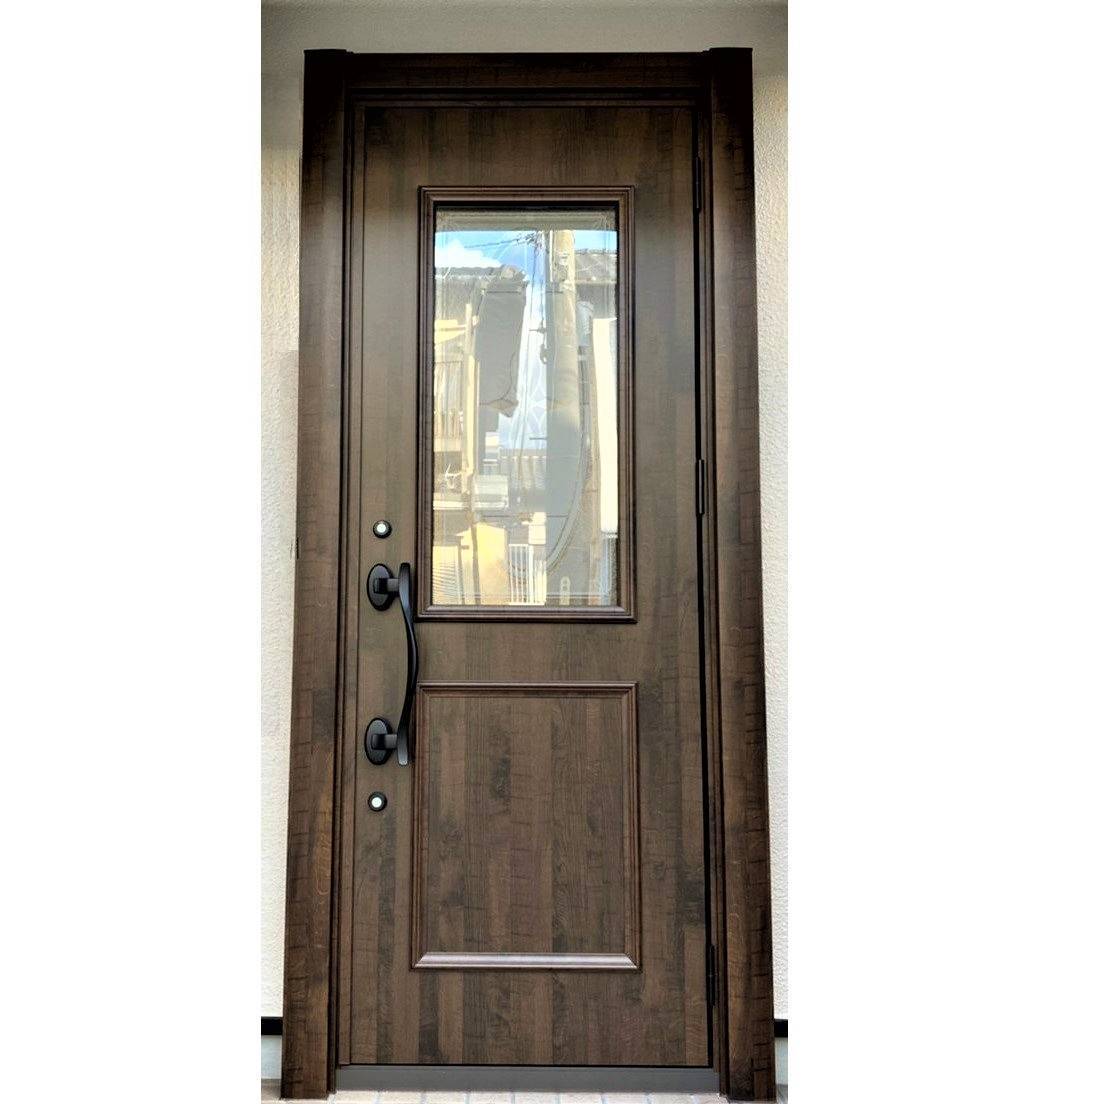 窓工房テラムラの動きの悪くなった玄関ドアを新しい断熱タイプの木目色の玄関ドアにしたいの施工後の写真1